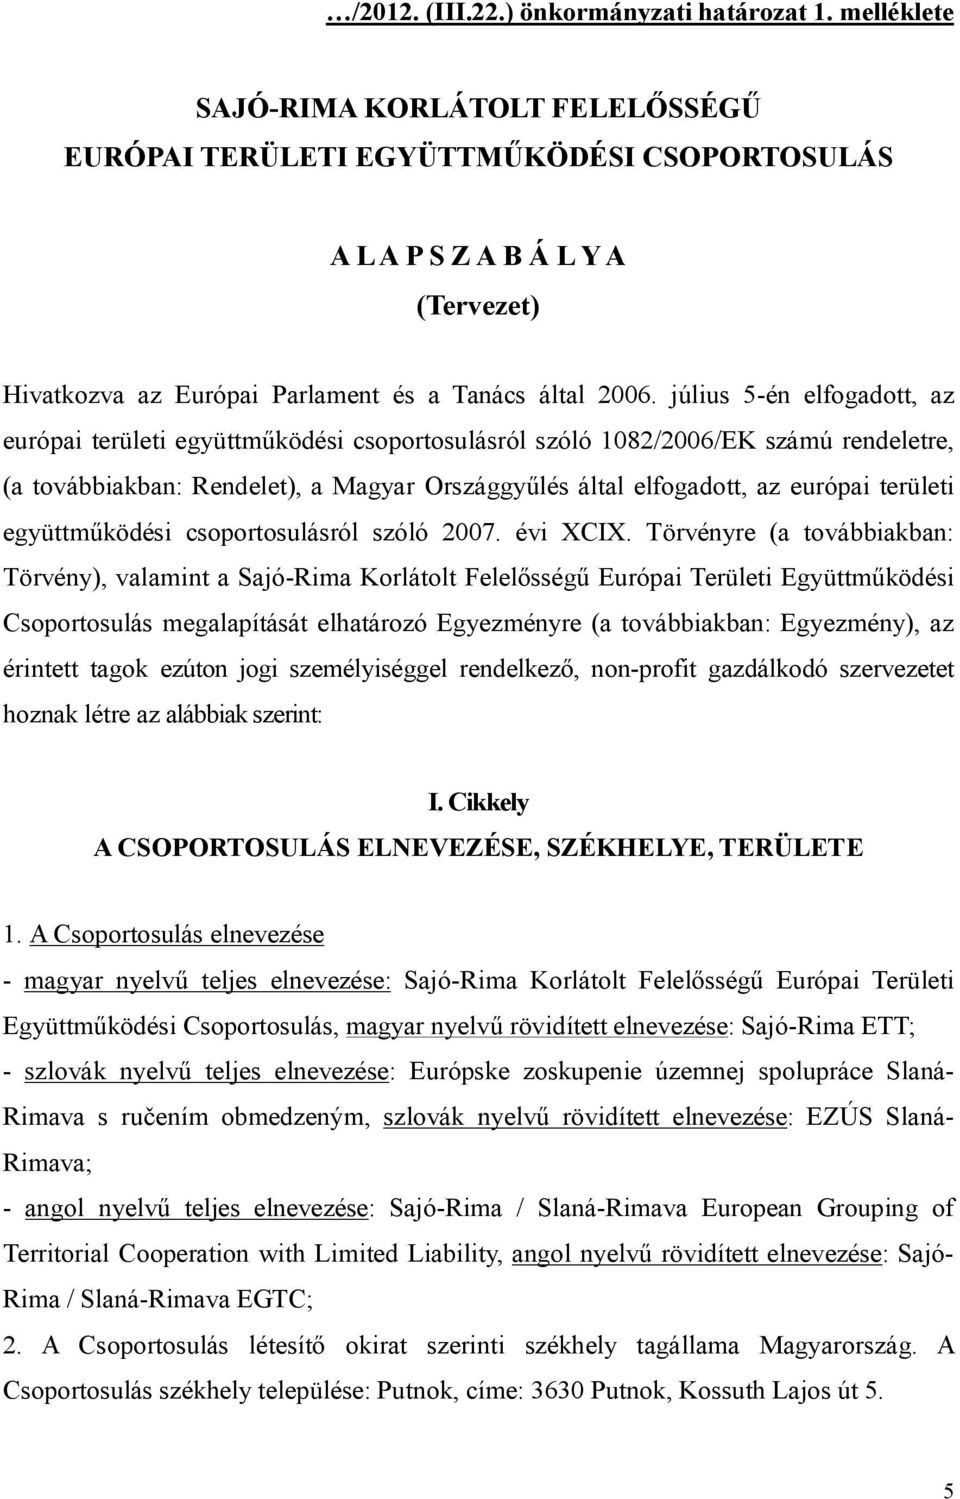 július 5-én elfogadott, az európai területi együttműködési csoportosulásról szóló 1082/2006/EK számú rendeletre, (a továbbiakban: Rendelet), a Magyar Országgyűlés által elfogadott, az európai